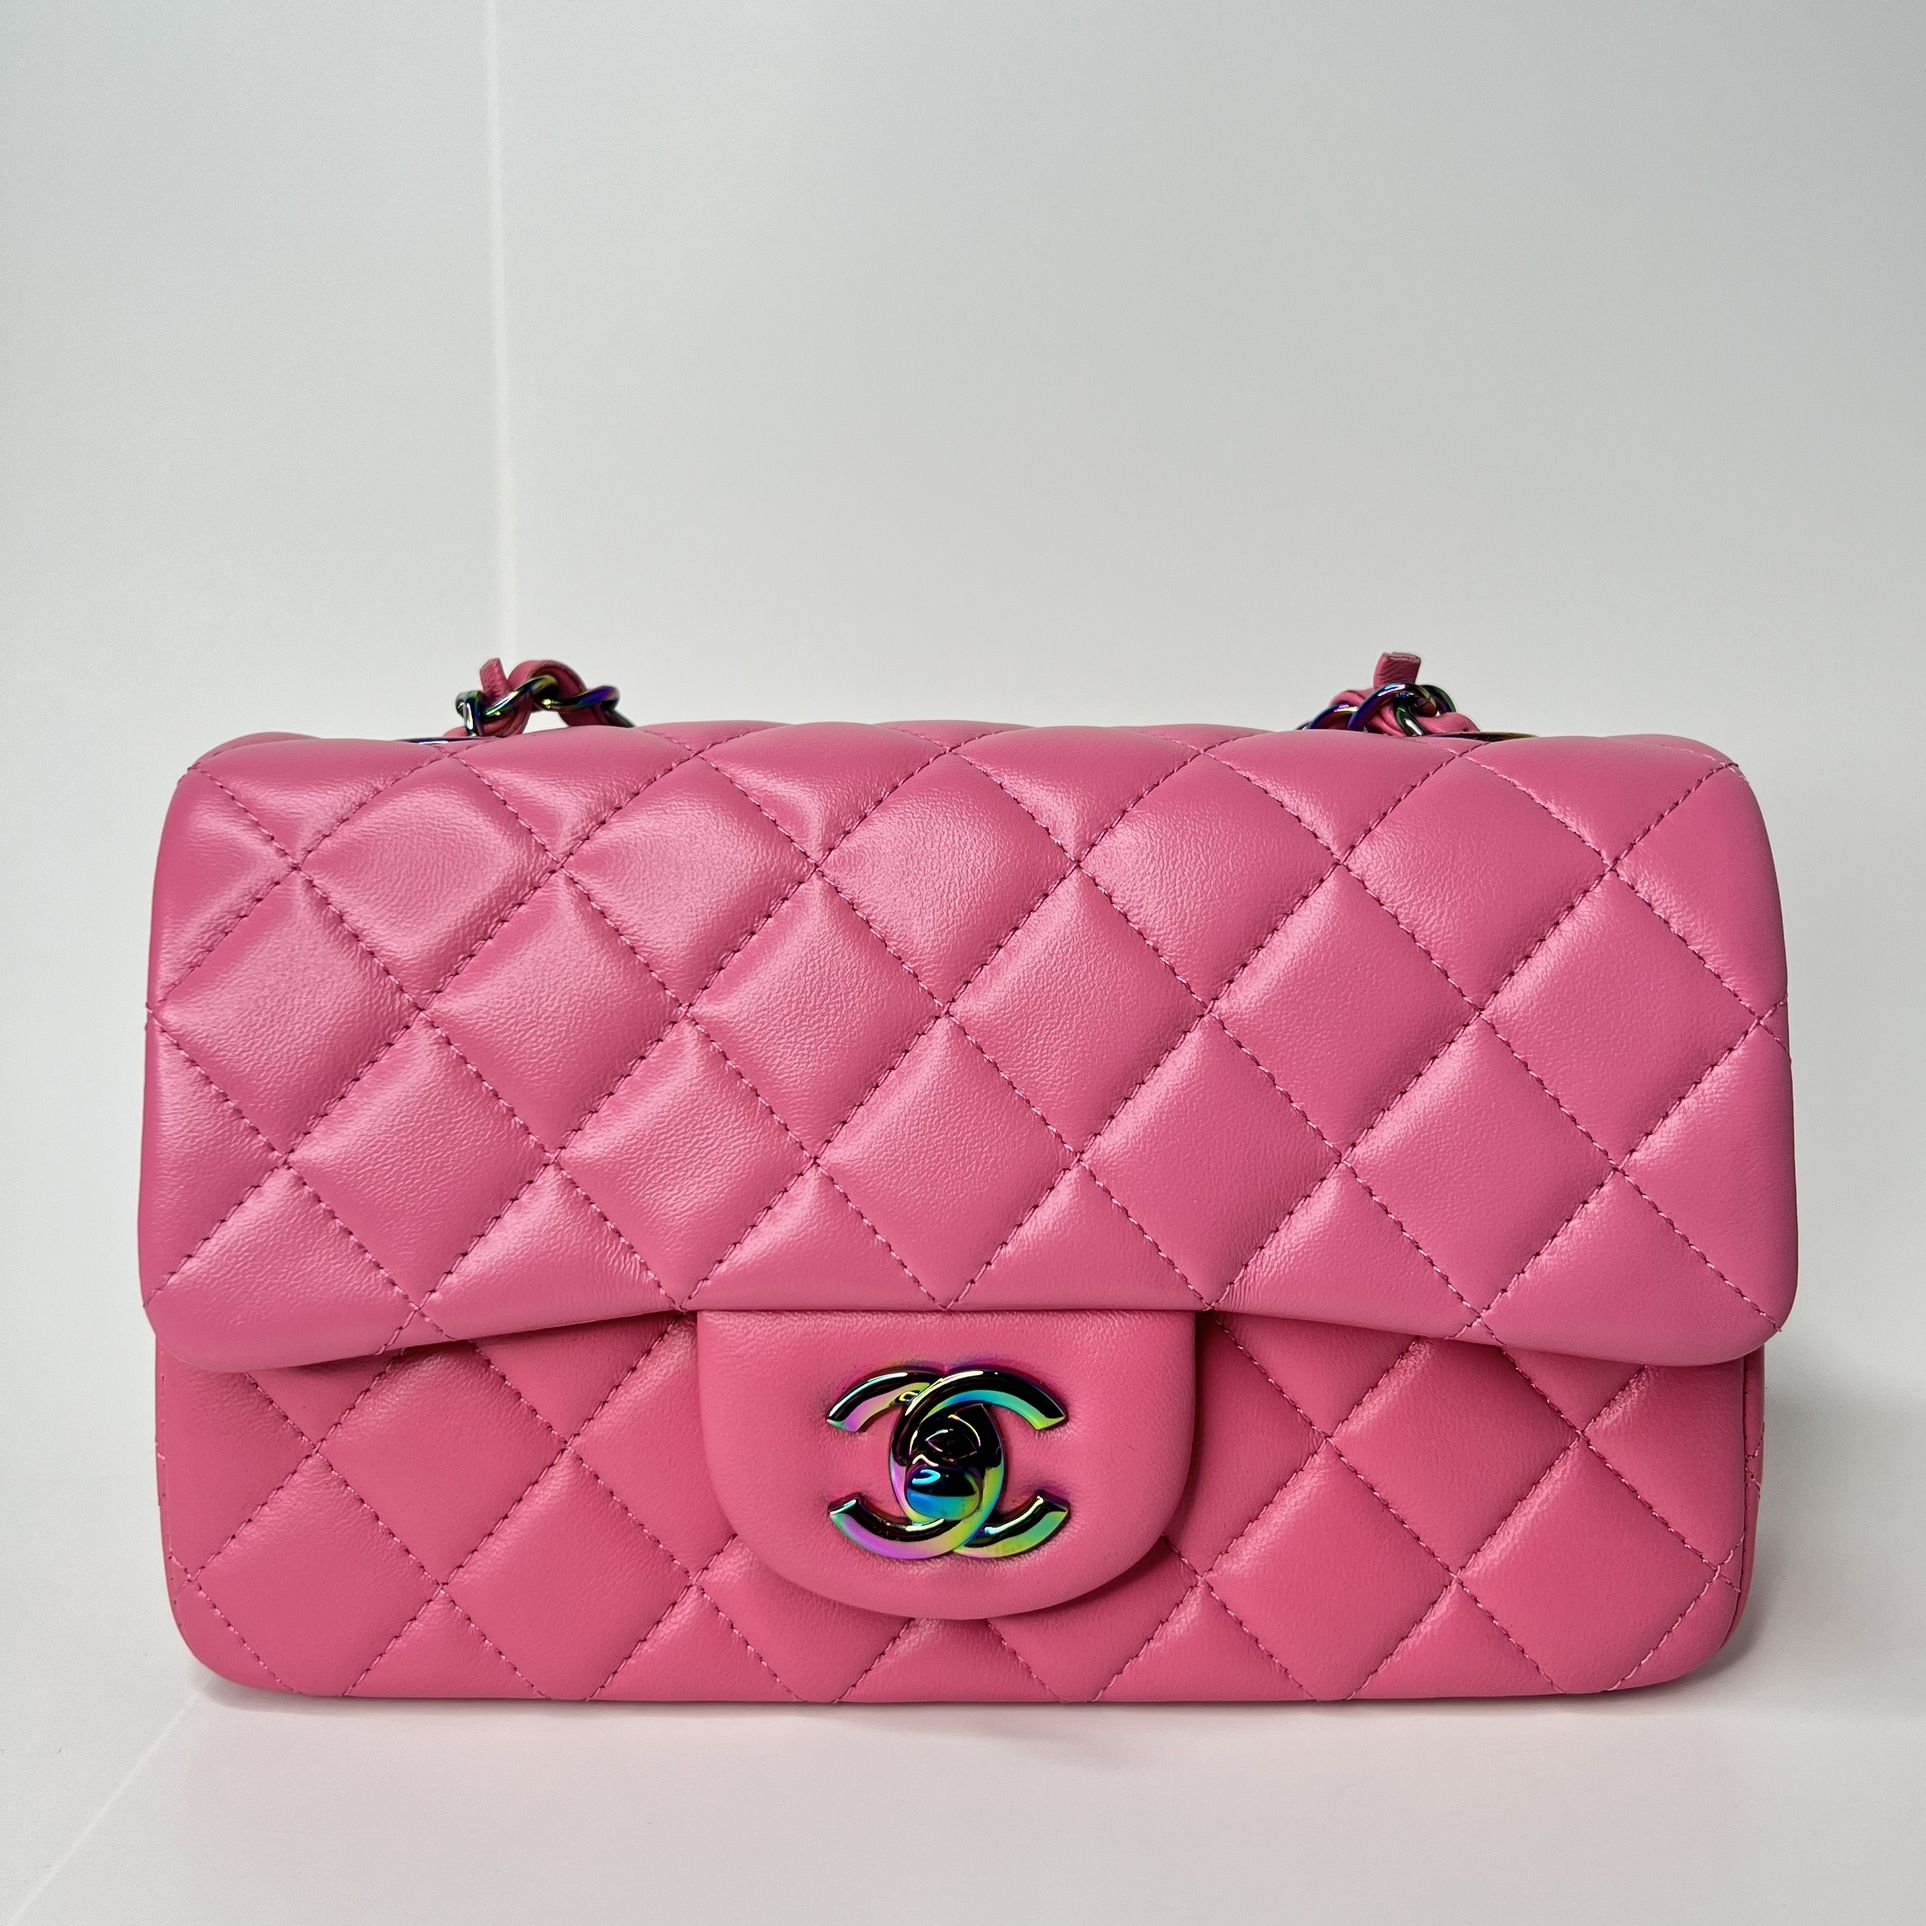 Mini Chanel Flap Bag